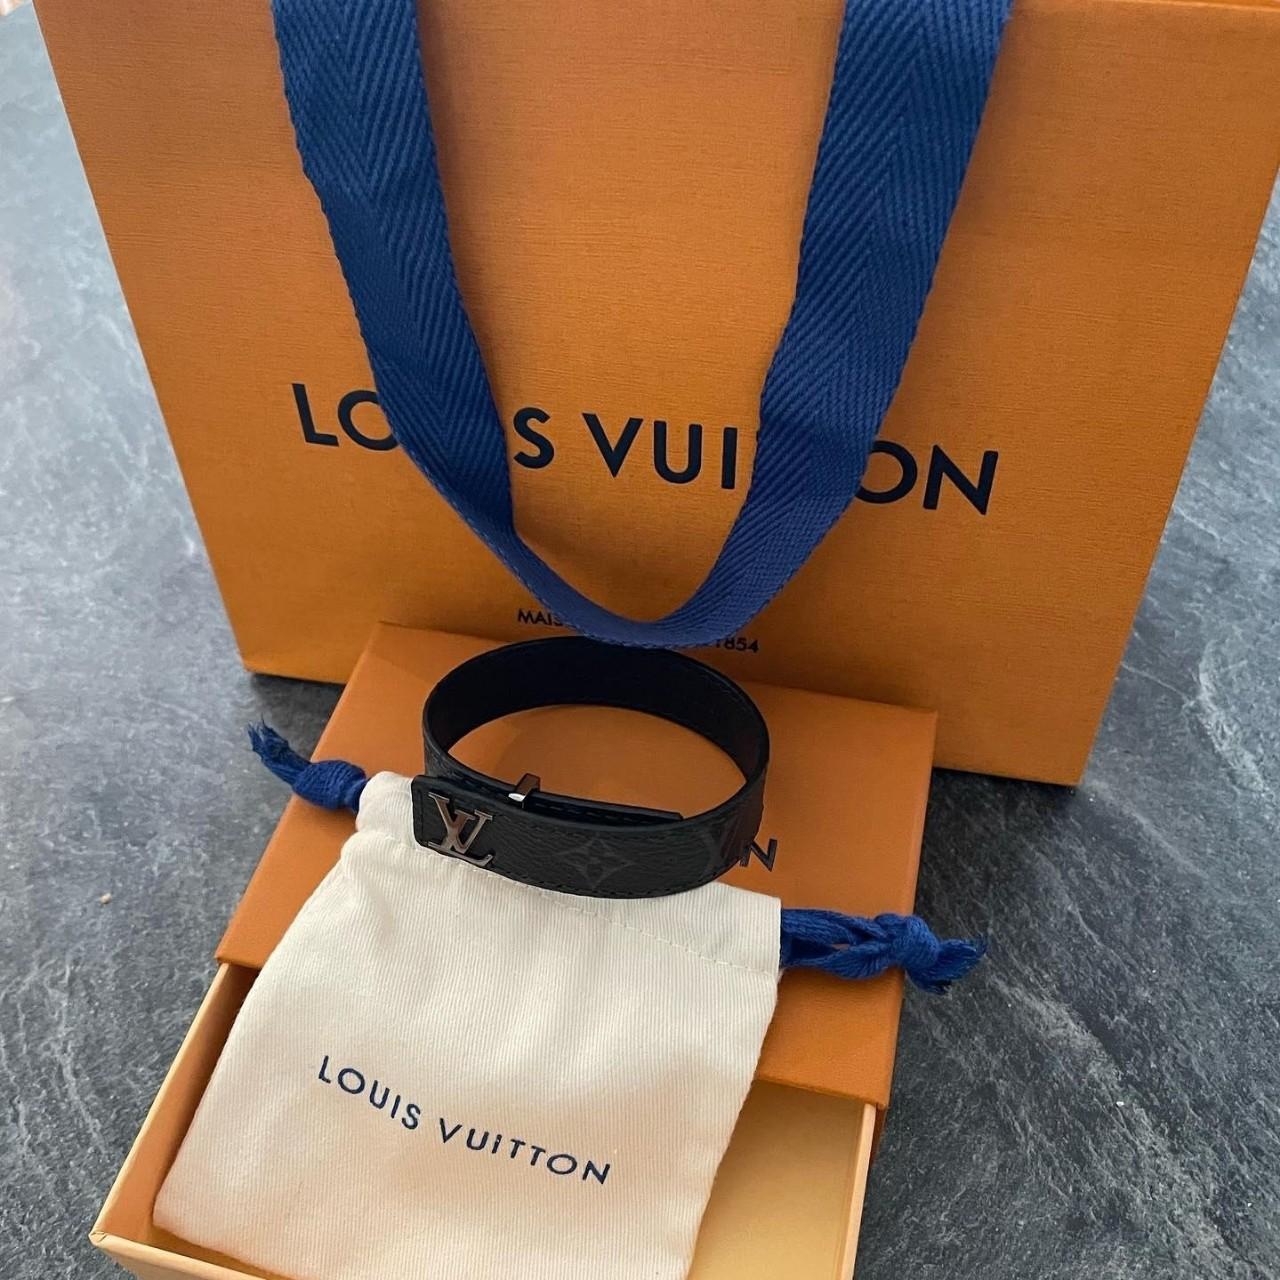 Brand new LV slim bracelet LV slim bracelet Comes... - Depop